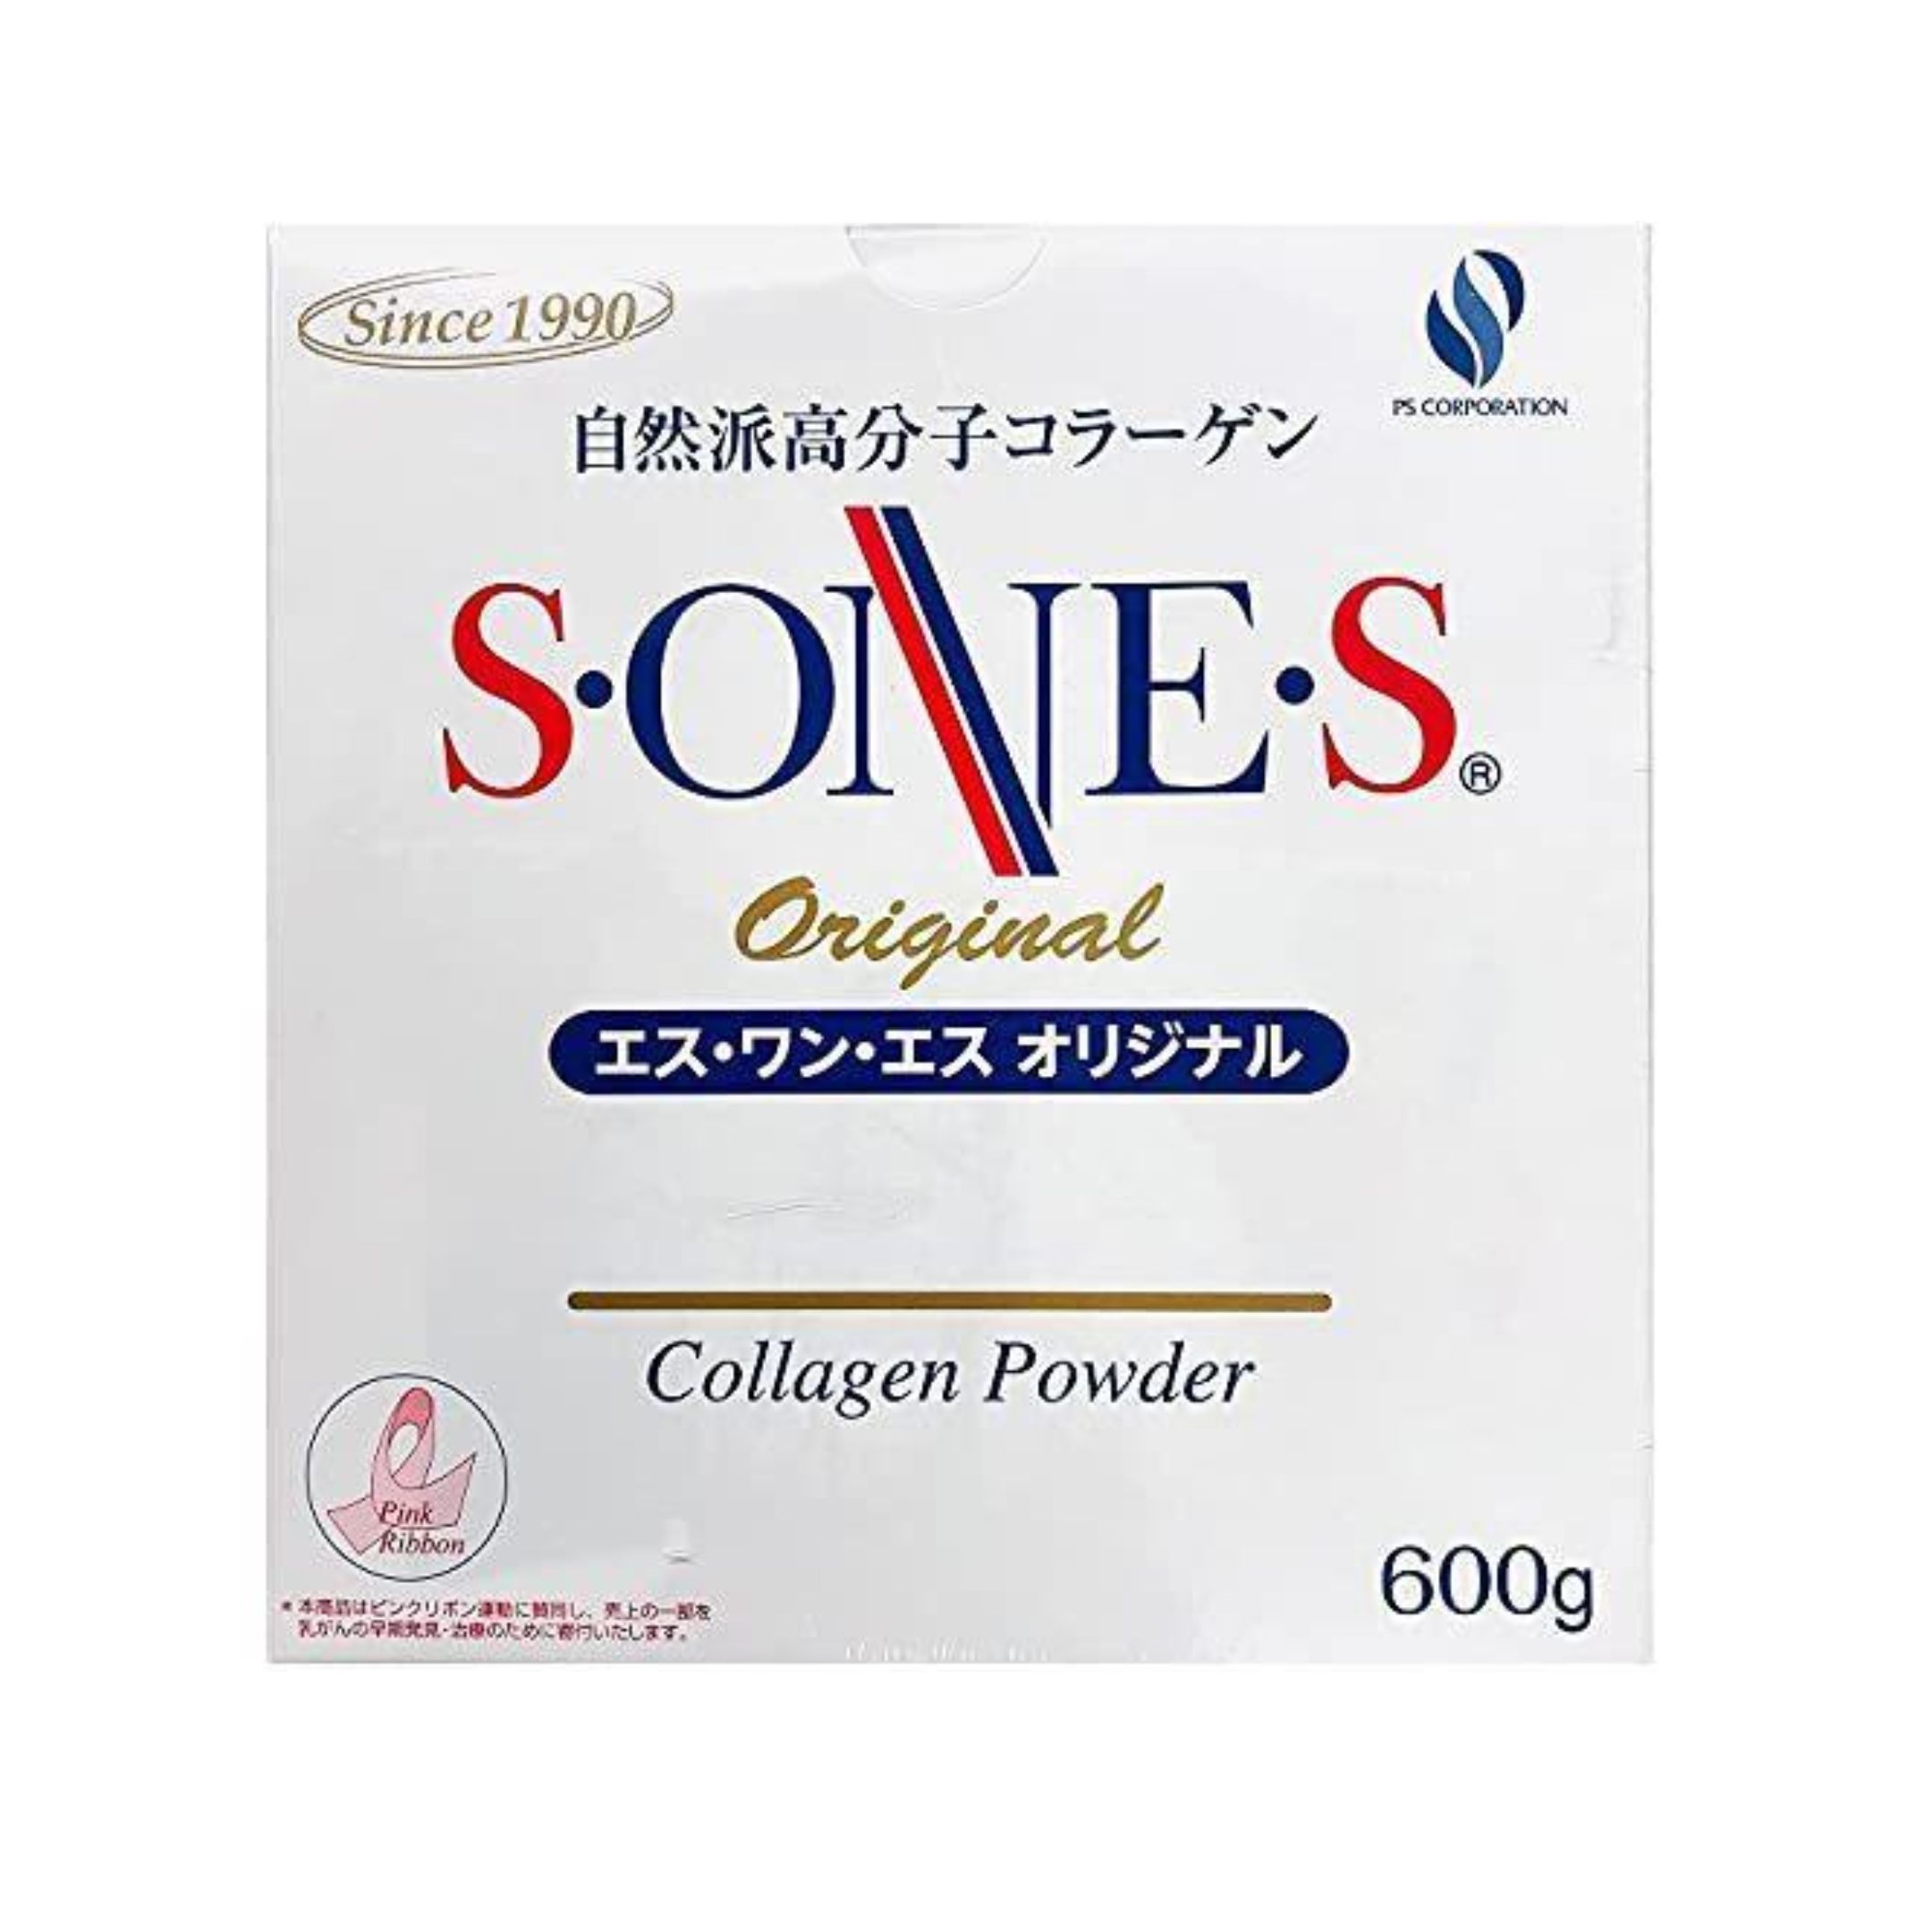 【あす楽】SONES エスワンエス オリジナル コラーゲン 600g 自然派高分子コラーゲン コラーゲンパウダー サプリメント 美容 1